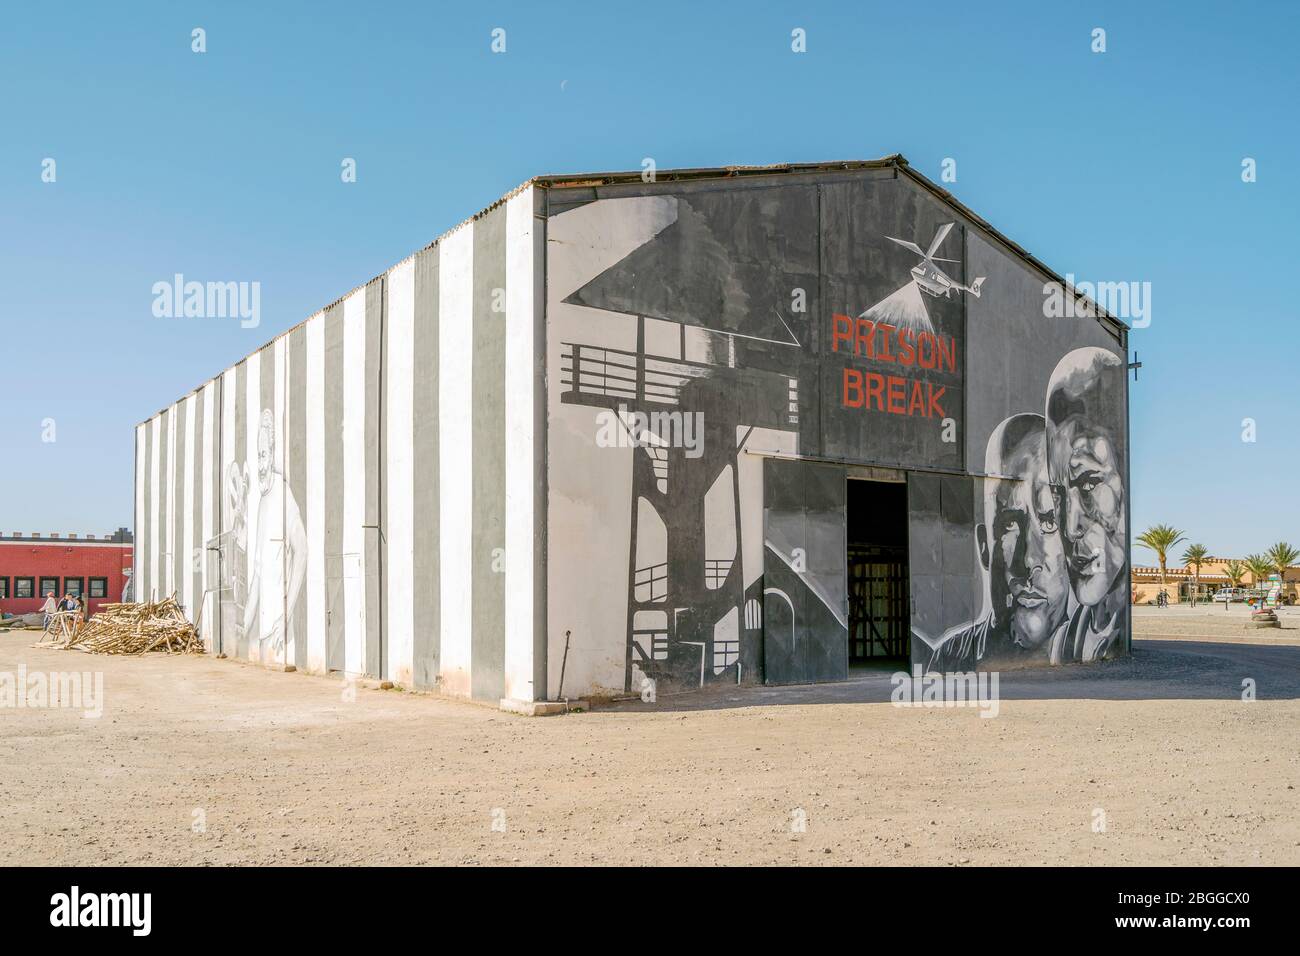 Ouarzazate, Maroc - 18 mars 2020: Le bâtiment dans les studios du cinéma Atlas où la prison Break a été tourné. Banque D'Images